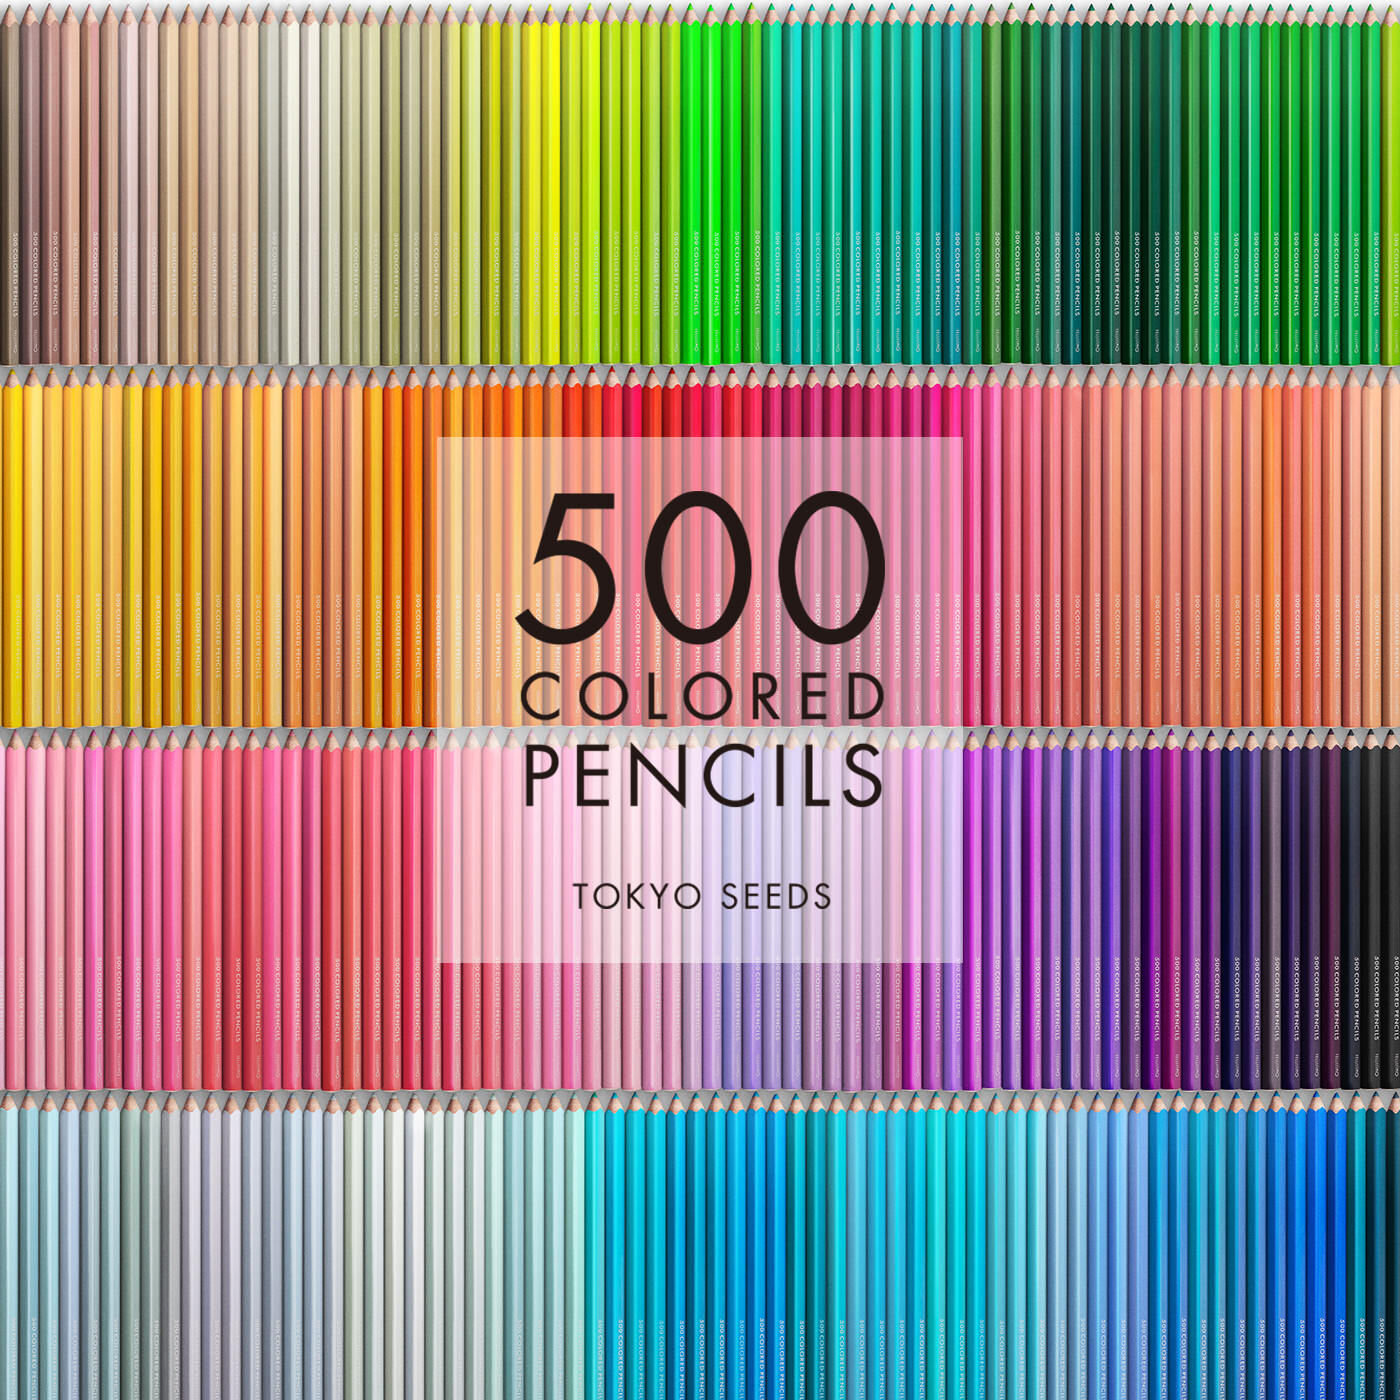 Real Stock|【304/500 FOLIAGE RUSTLE】500色の色えんぴつ TOKYO SEEDS|1992年、世界初の「500色」という膨大な色数の色えんぴつが誕生して以来、その販売数は発売当初から合わせると、世界55ヵ国10万セット以上。今回、メイド・イン・ジャパンにこだわり、すべてが新しく生まれ変わって登場しました。